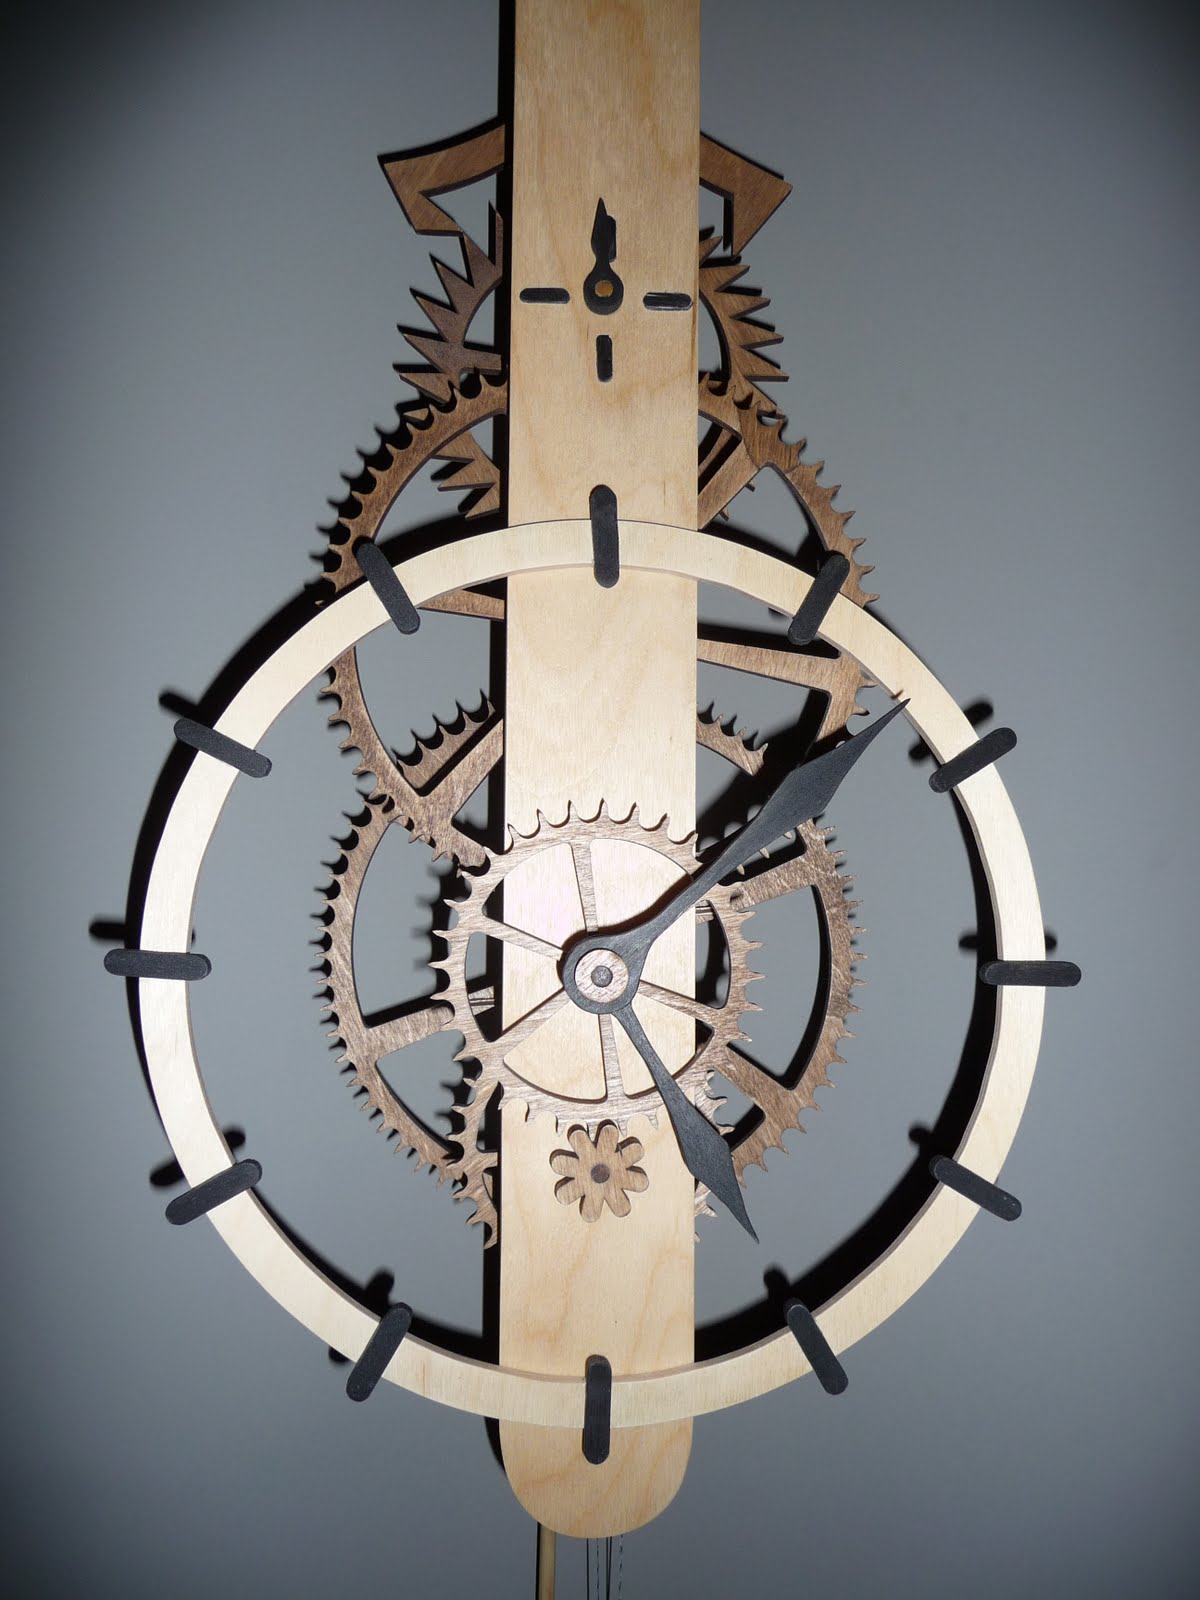 &gt;Wood Gear Clock highrockwoodworking